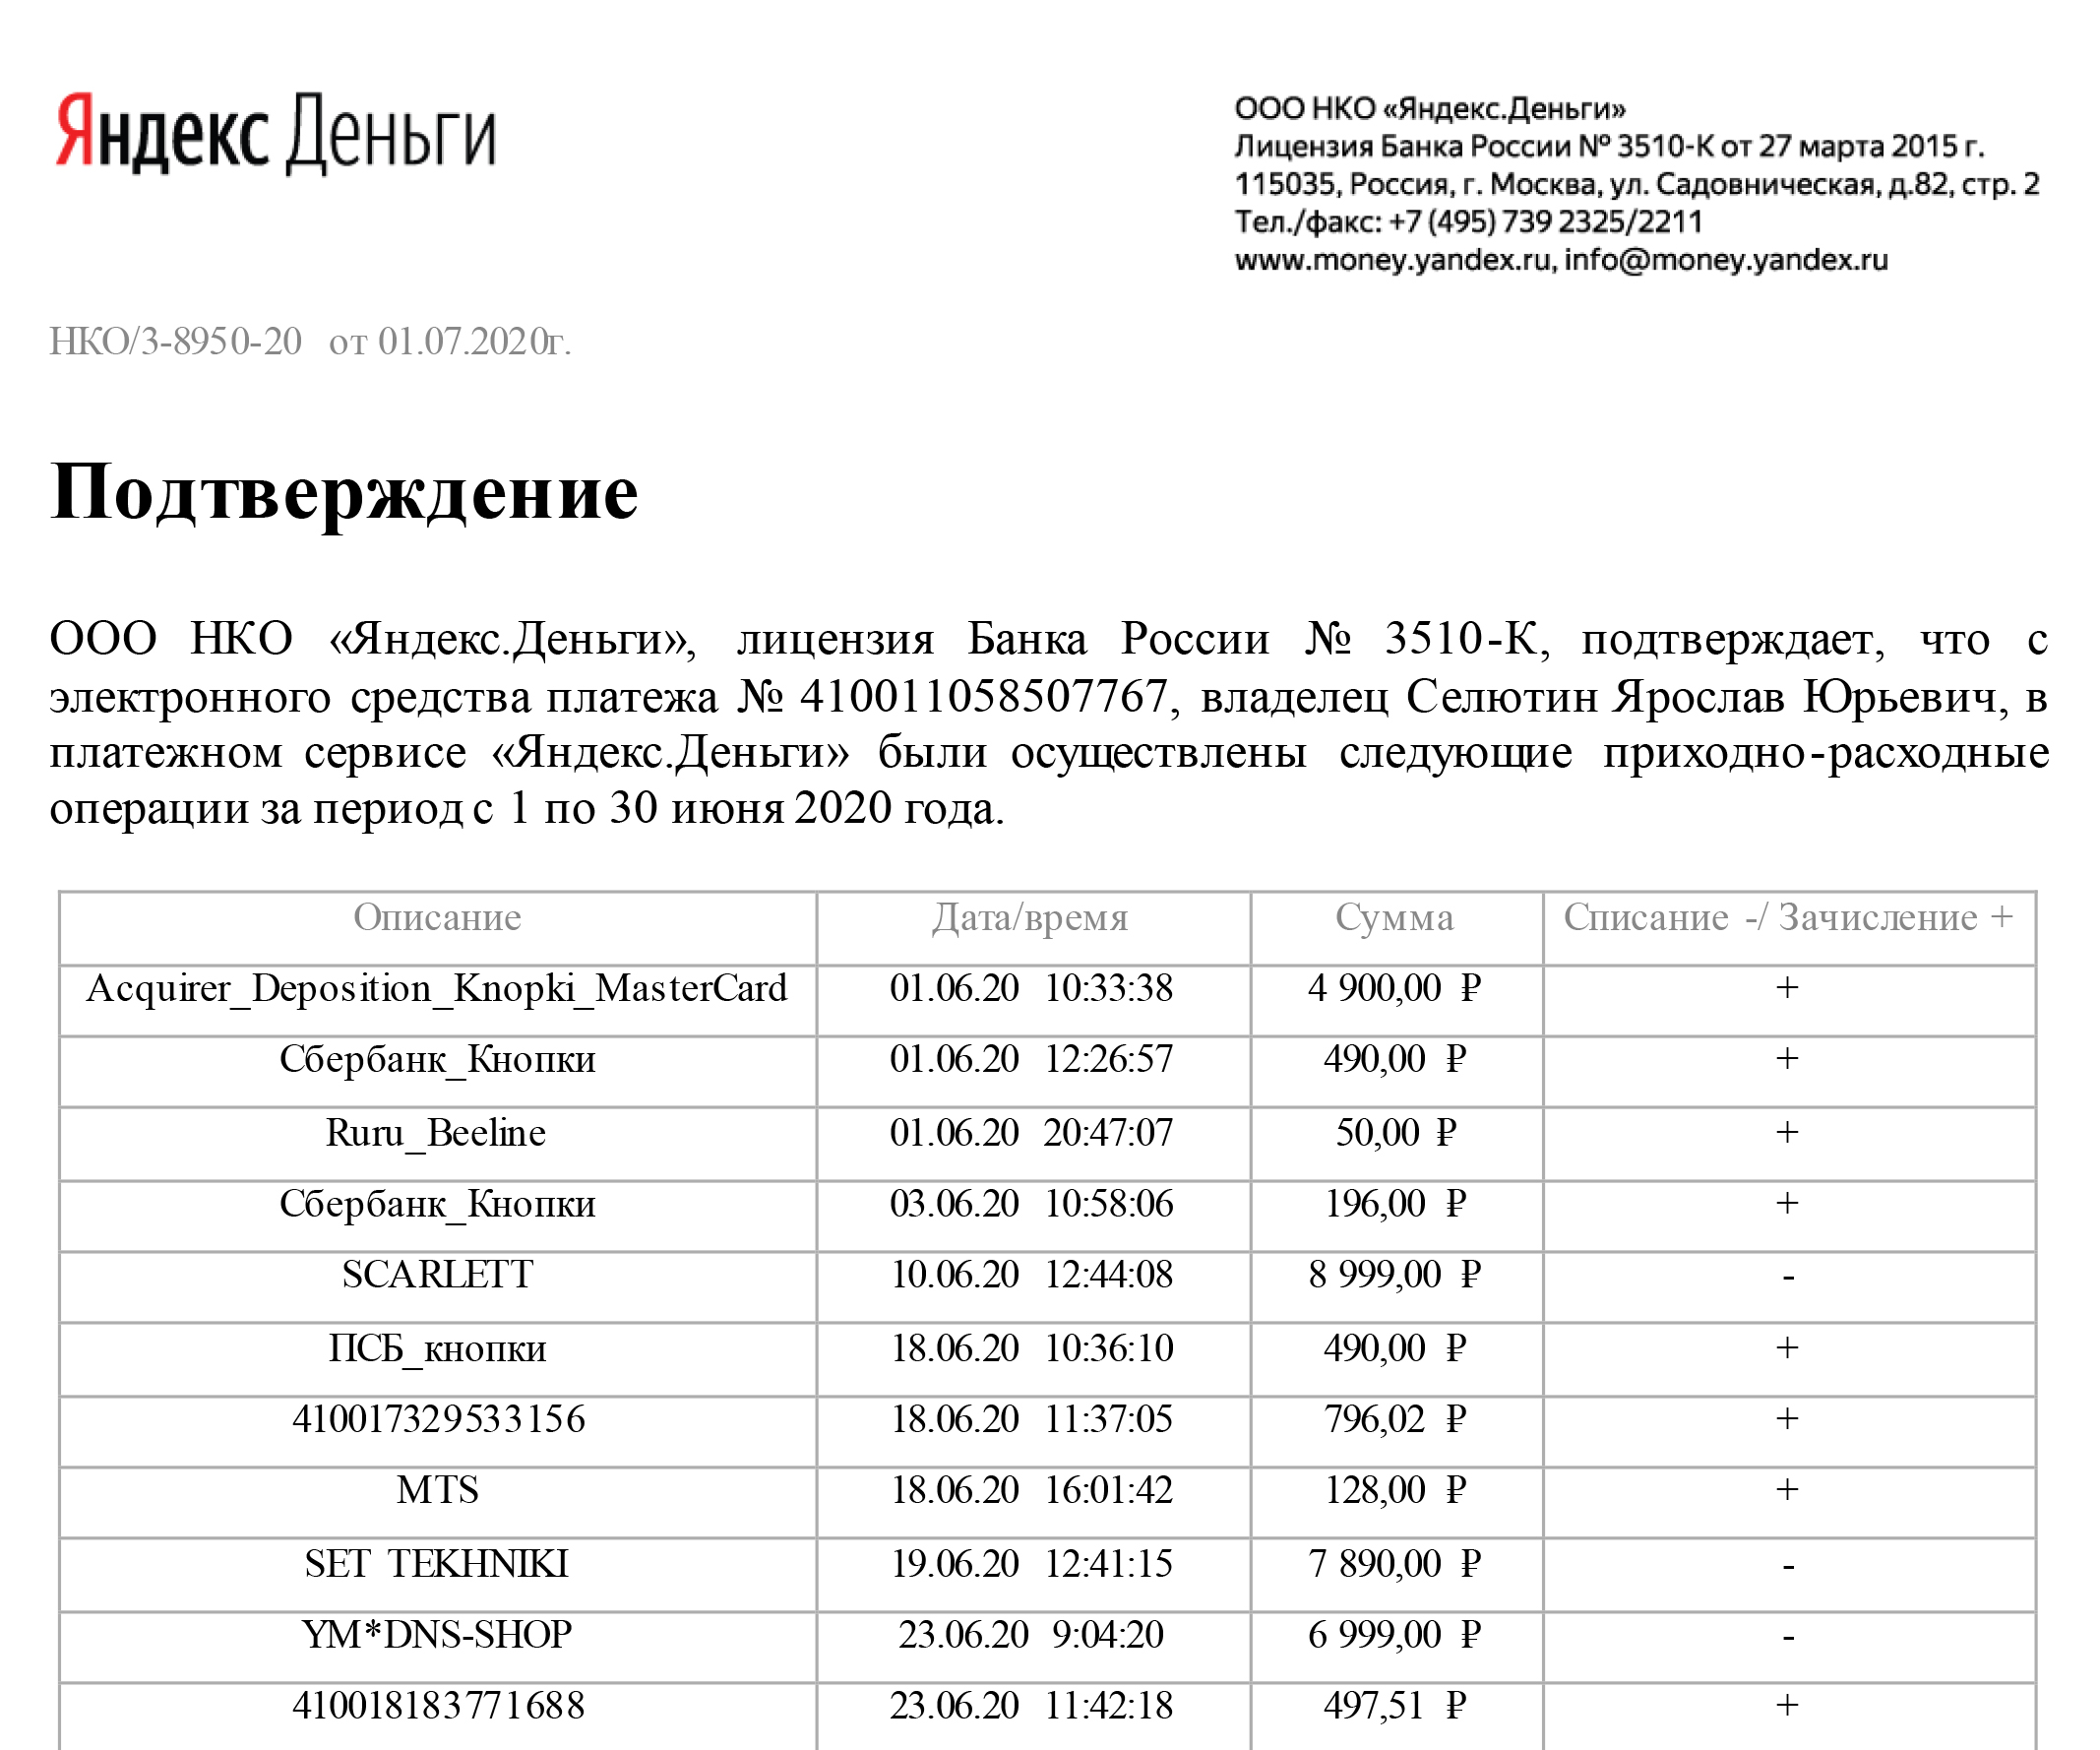 Отчет по кошельку «Яндекс⁠-⁠денег» за июнь 2020 года показывает, где совершались покупки, а заодно подтверждает личность организатора проекта